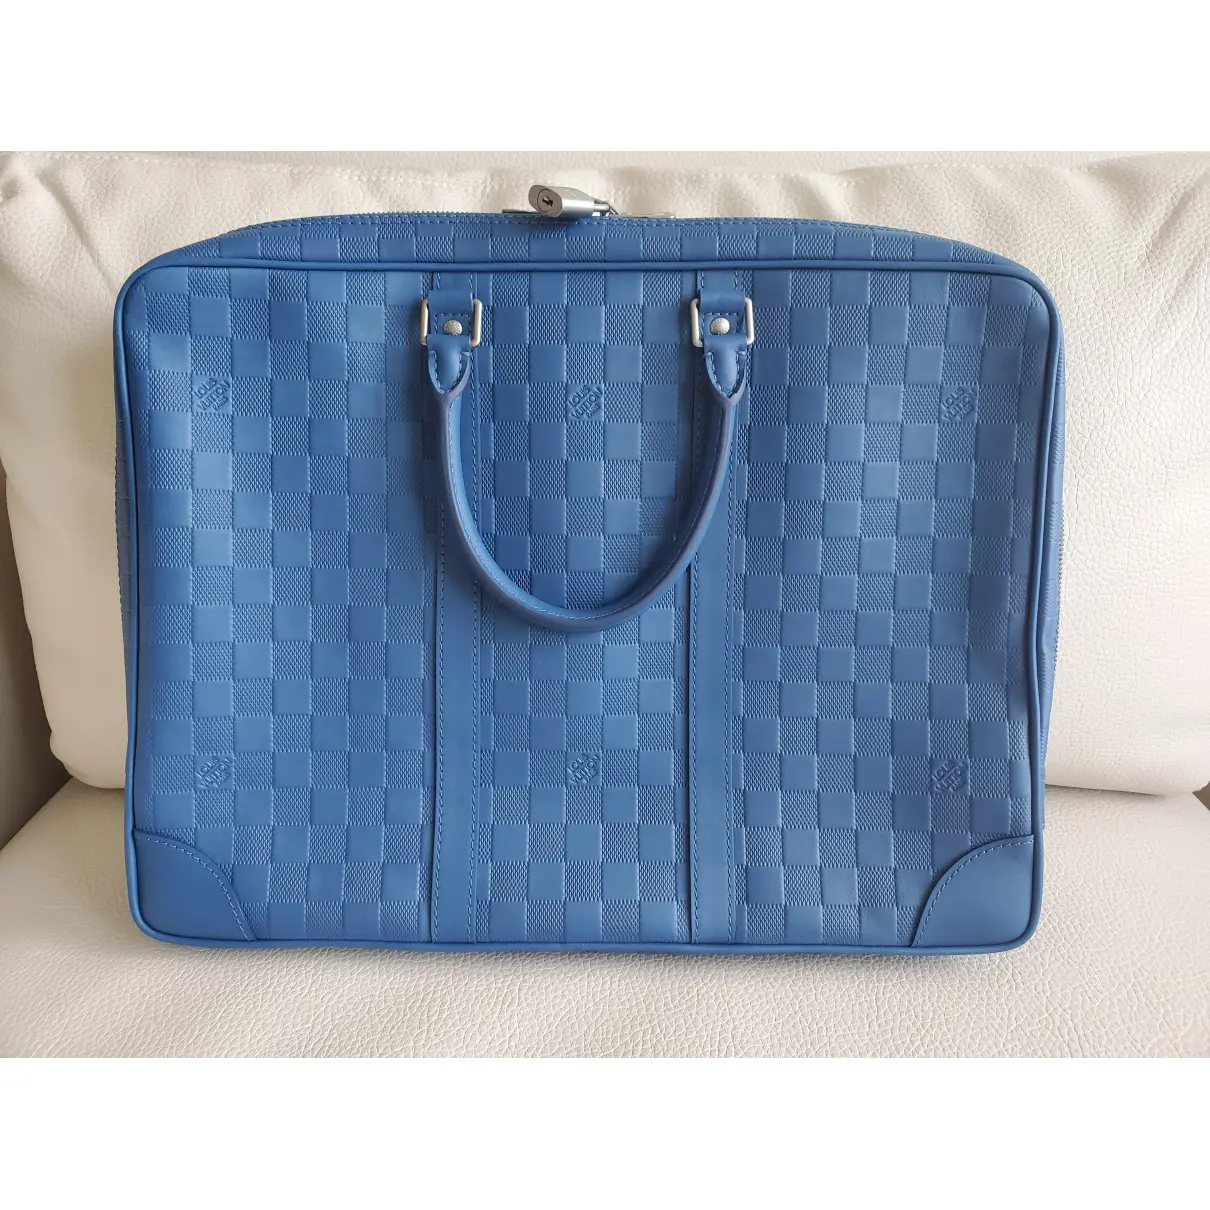 Buy Louis Vuitton Porte Documents Voyage leather bag online